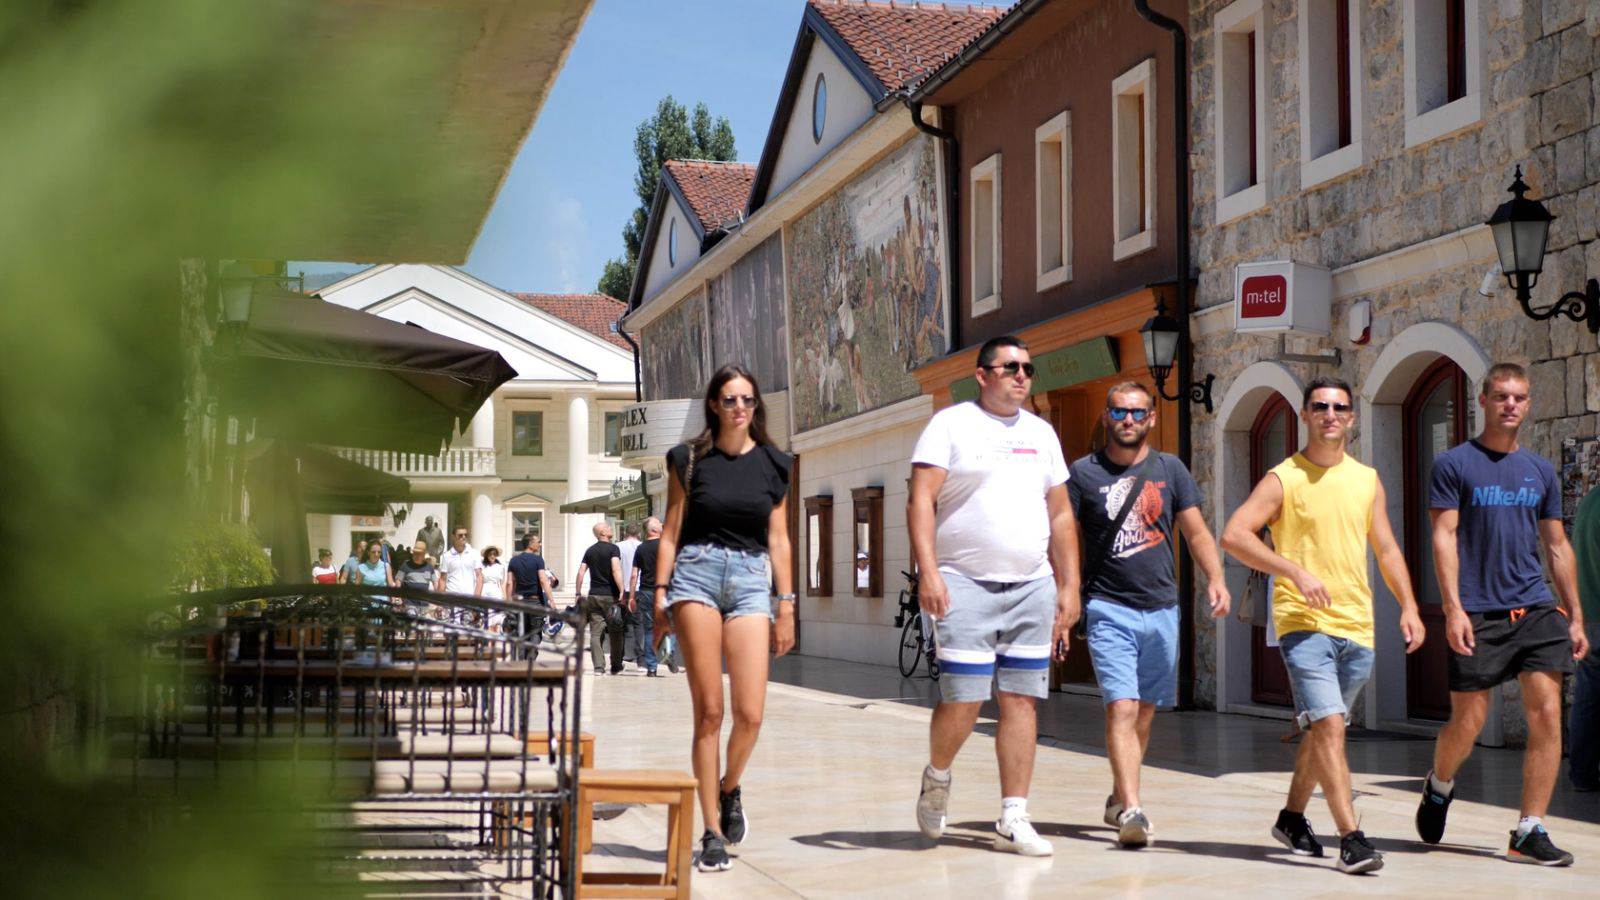  Višegrad turizam ljeto 2021 